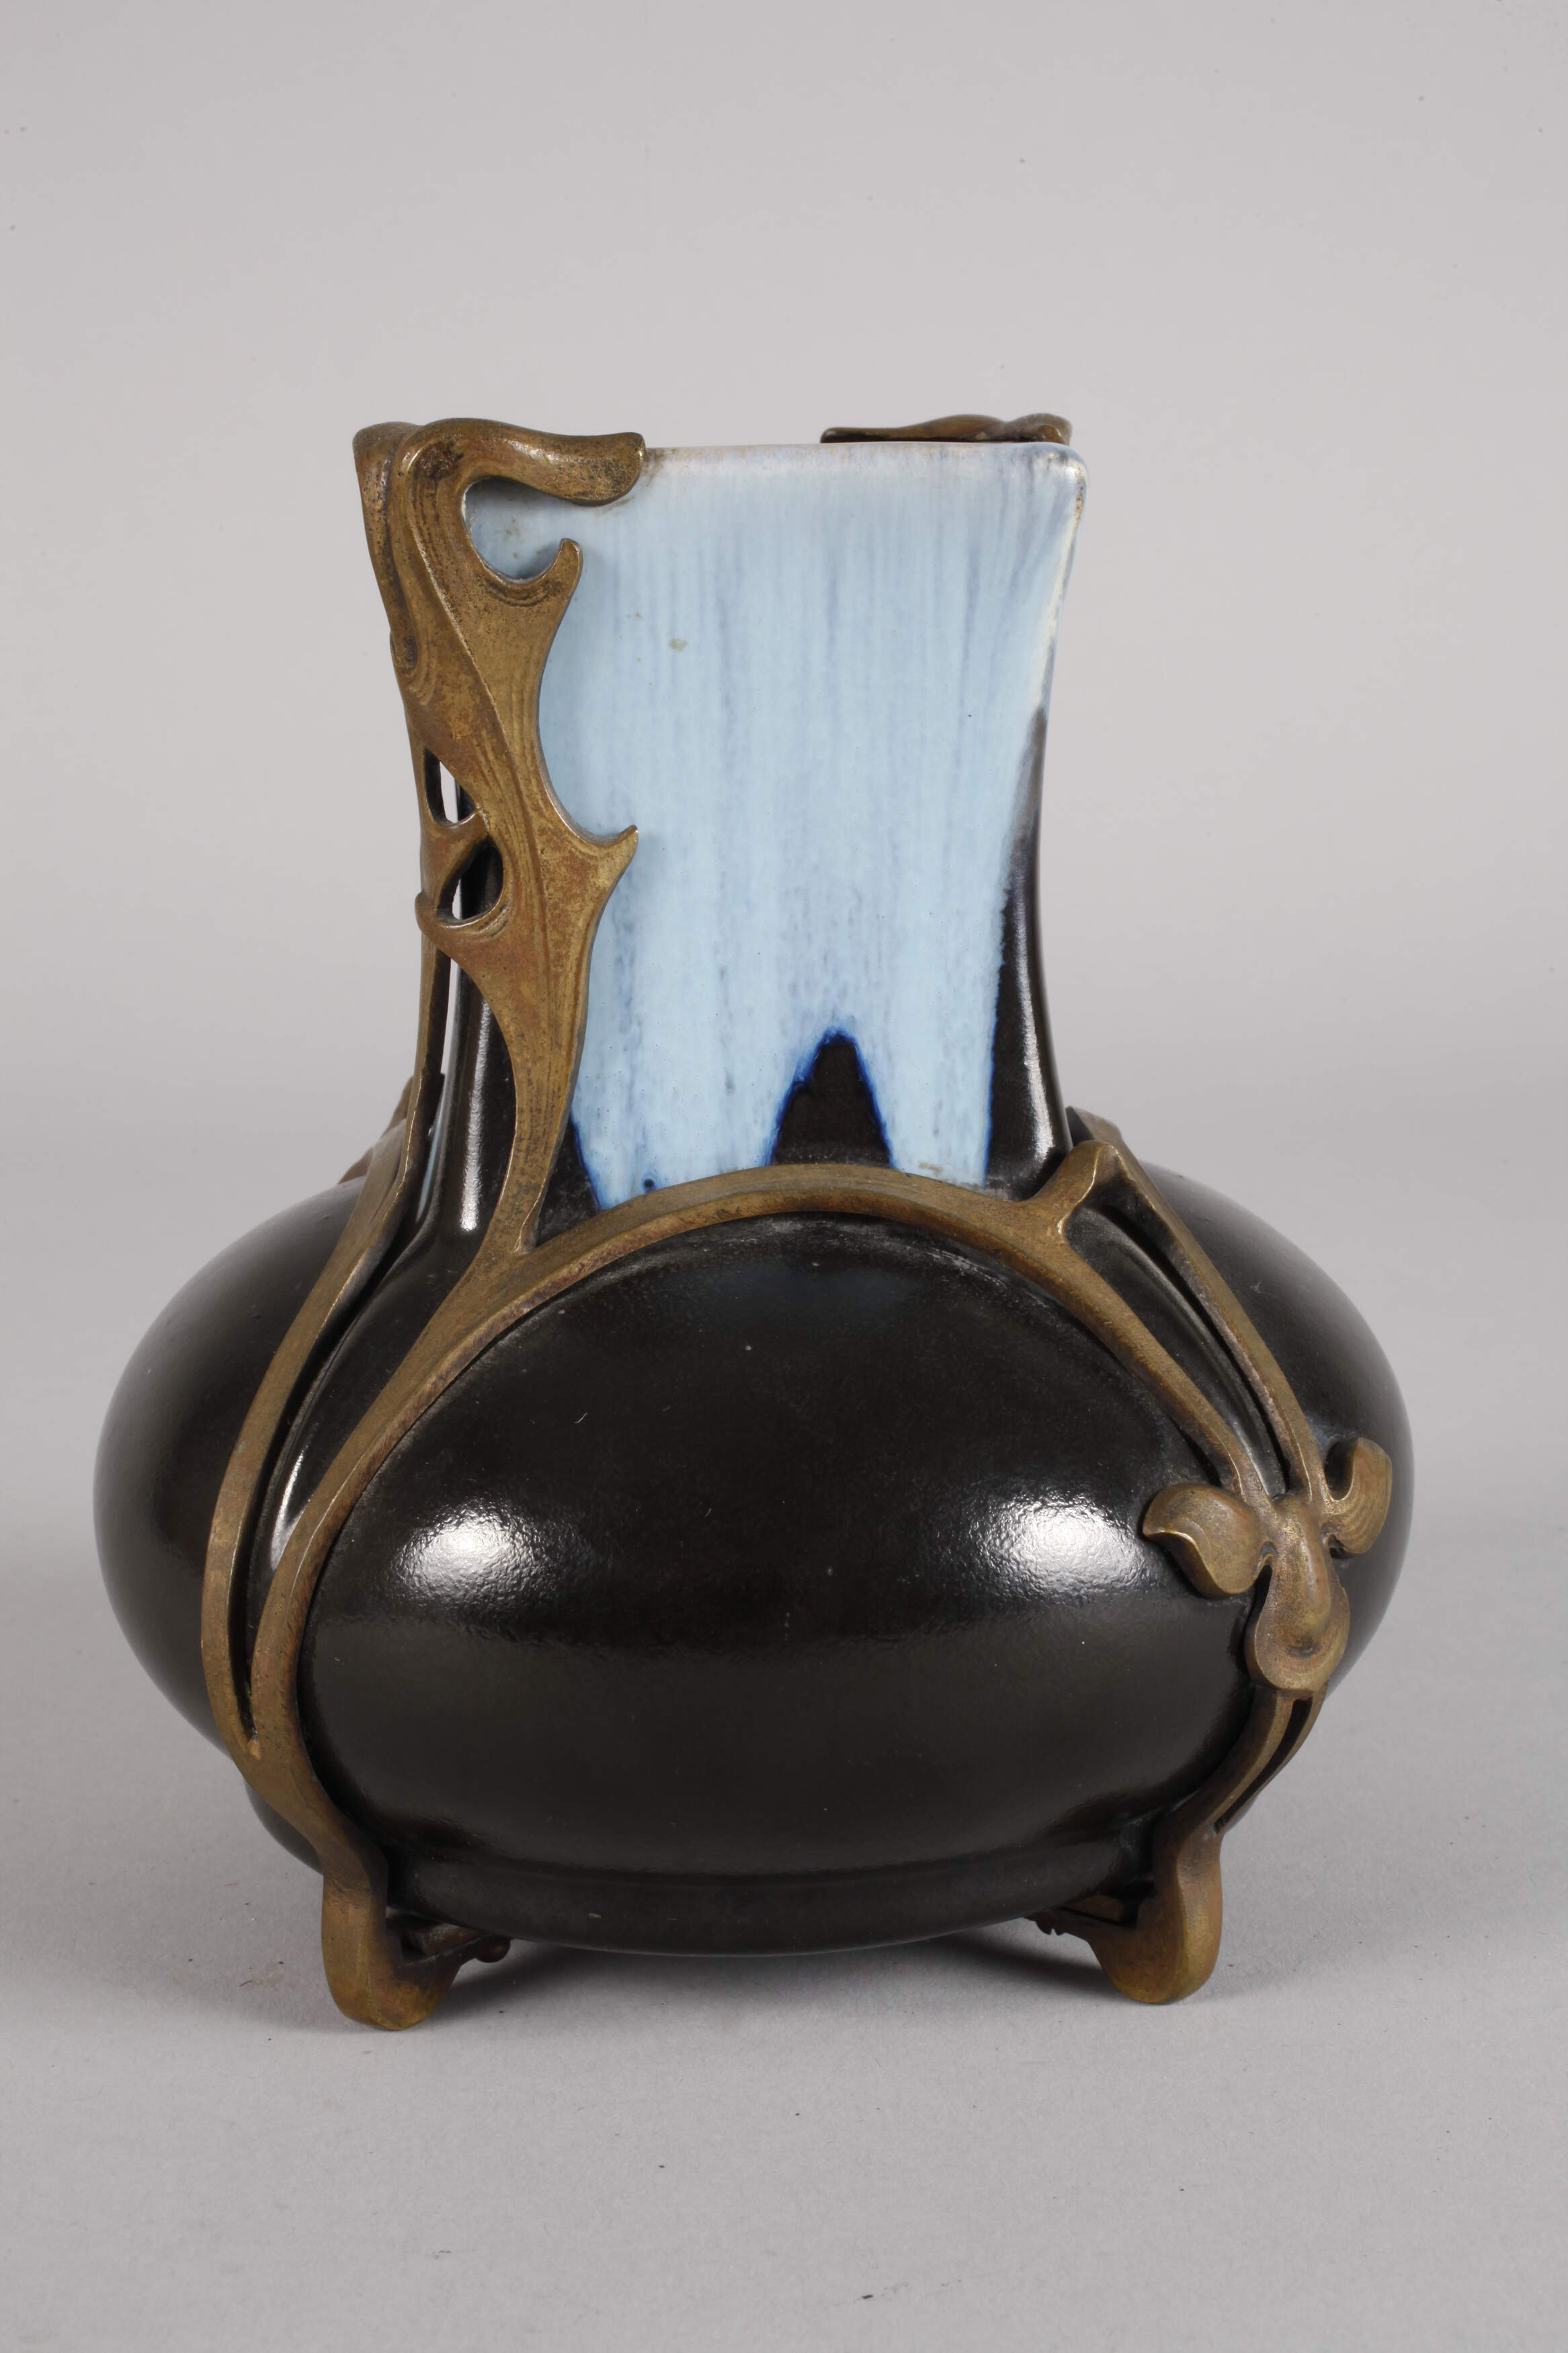 Mounted barrel glaze vase - Image 3 of 5